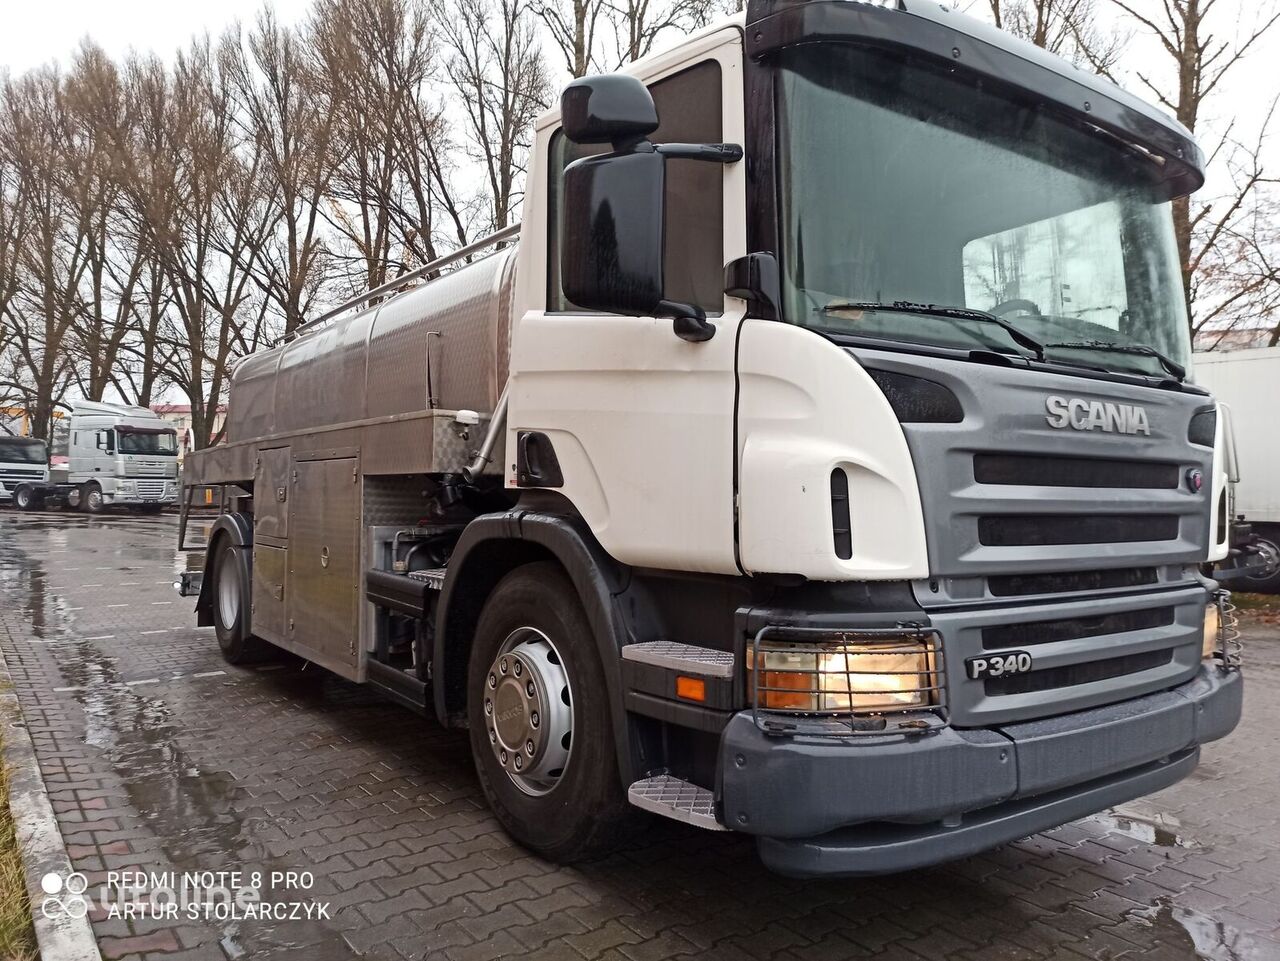 Scania P340 camión para transporte de leche